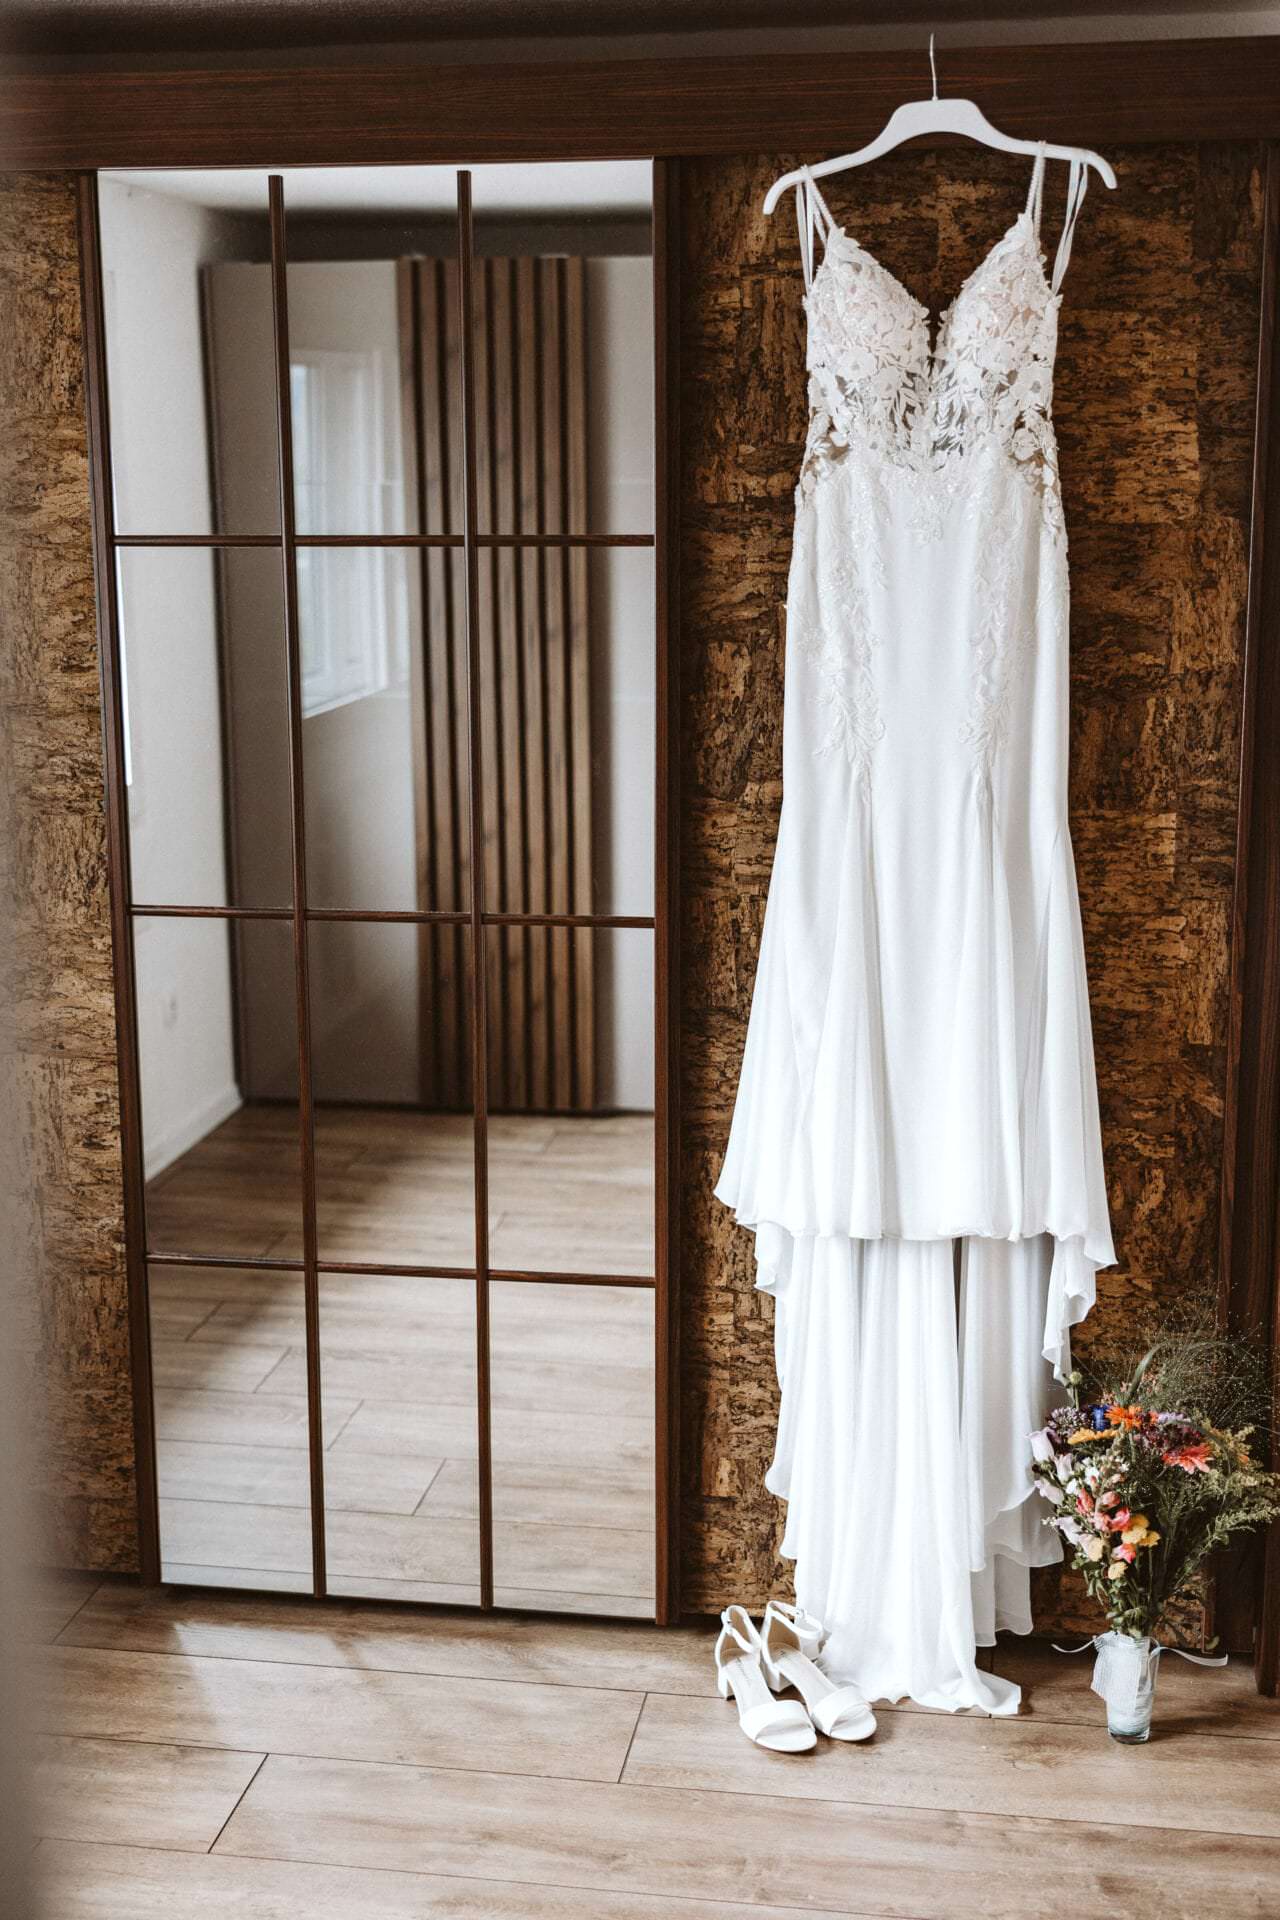 Hochzeitsfotograf Dinslaken Hochzeit Heiraten Hochzeitsfotos - Hochzeitskleid hängt auf einem weißen Kleiderbügel neben einem Spiegel. Unter dem Hochzeitskleid ist ein Blumenstrauß und Schuhe zu sehen